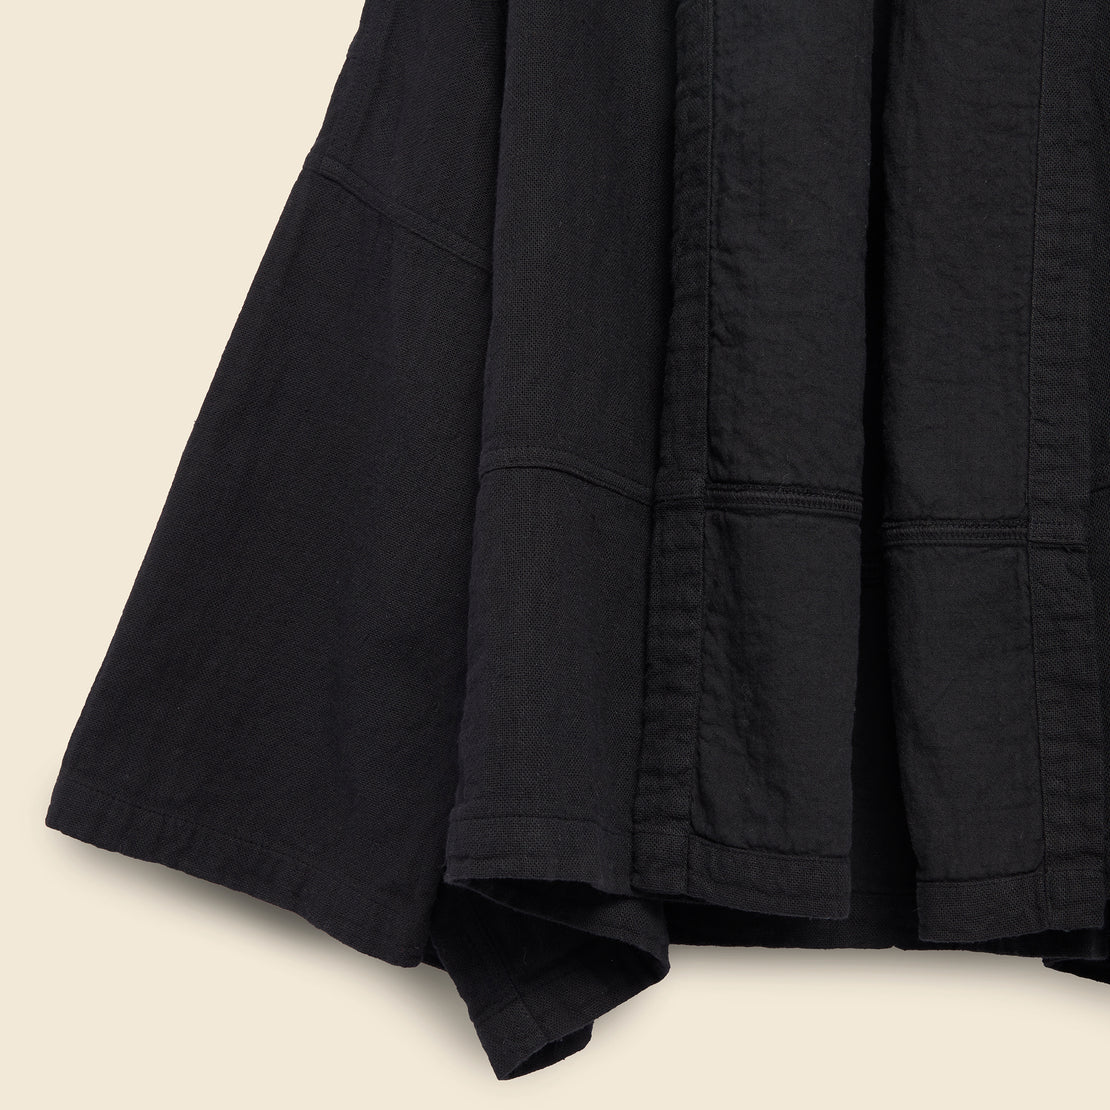 Kimono Jacket - Black - Atelier Delphine - STAG Provisions - W - Tops - Kimono